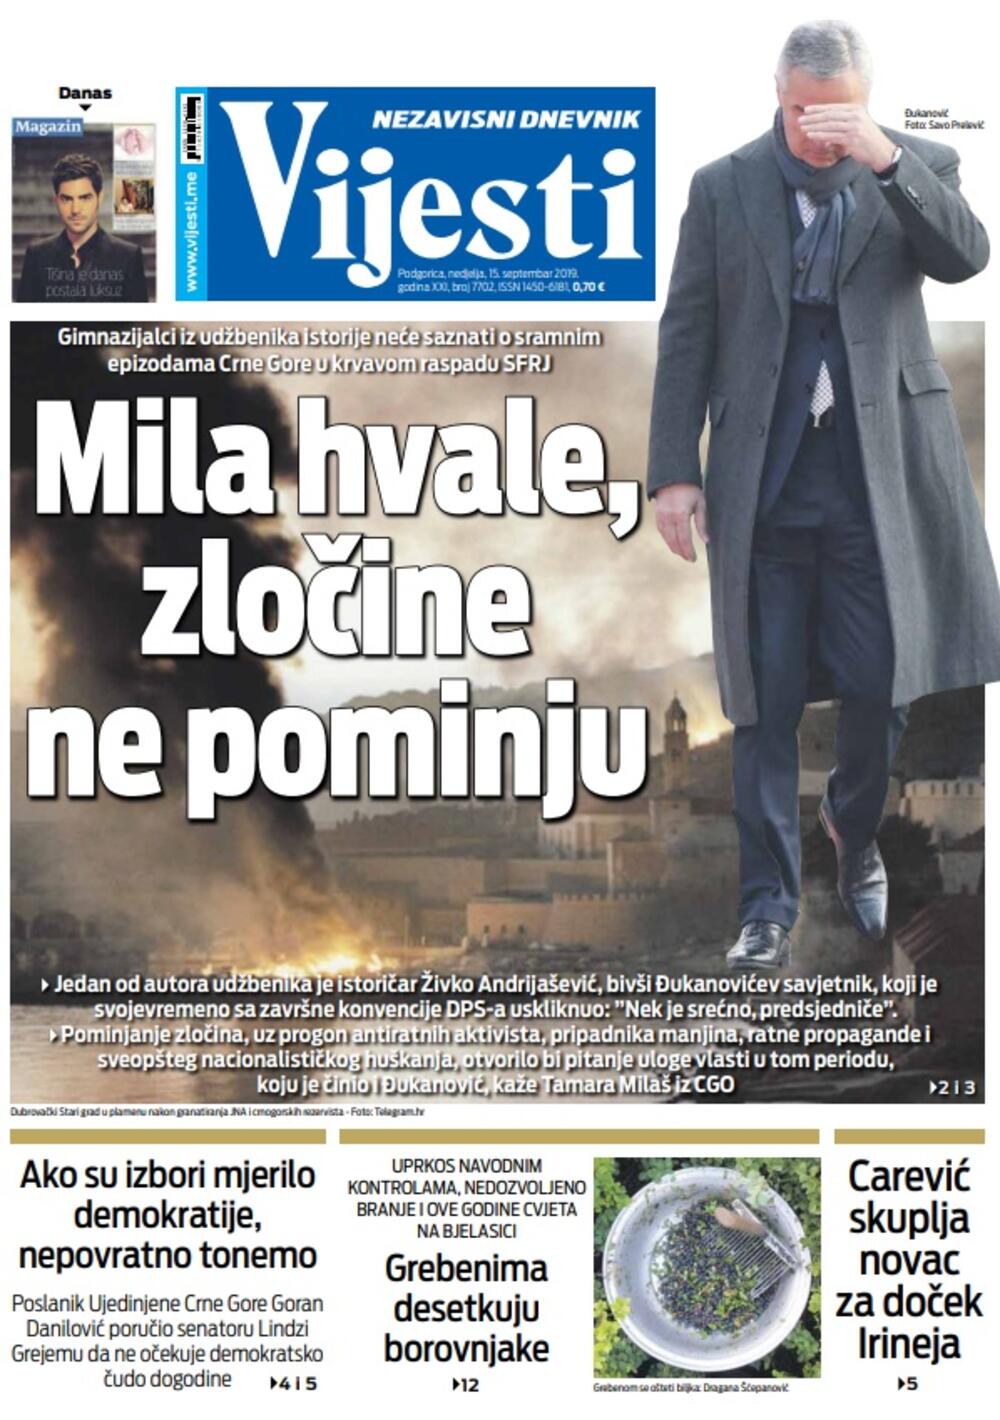 Naslovna strana "Vijesti" za 15. septembar, Foto: Vijesti